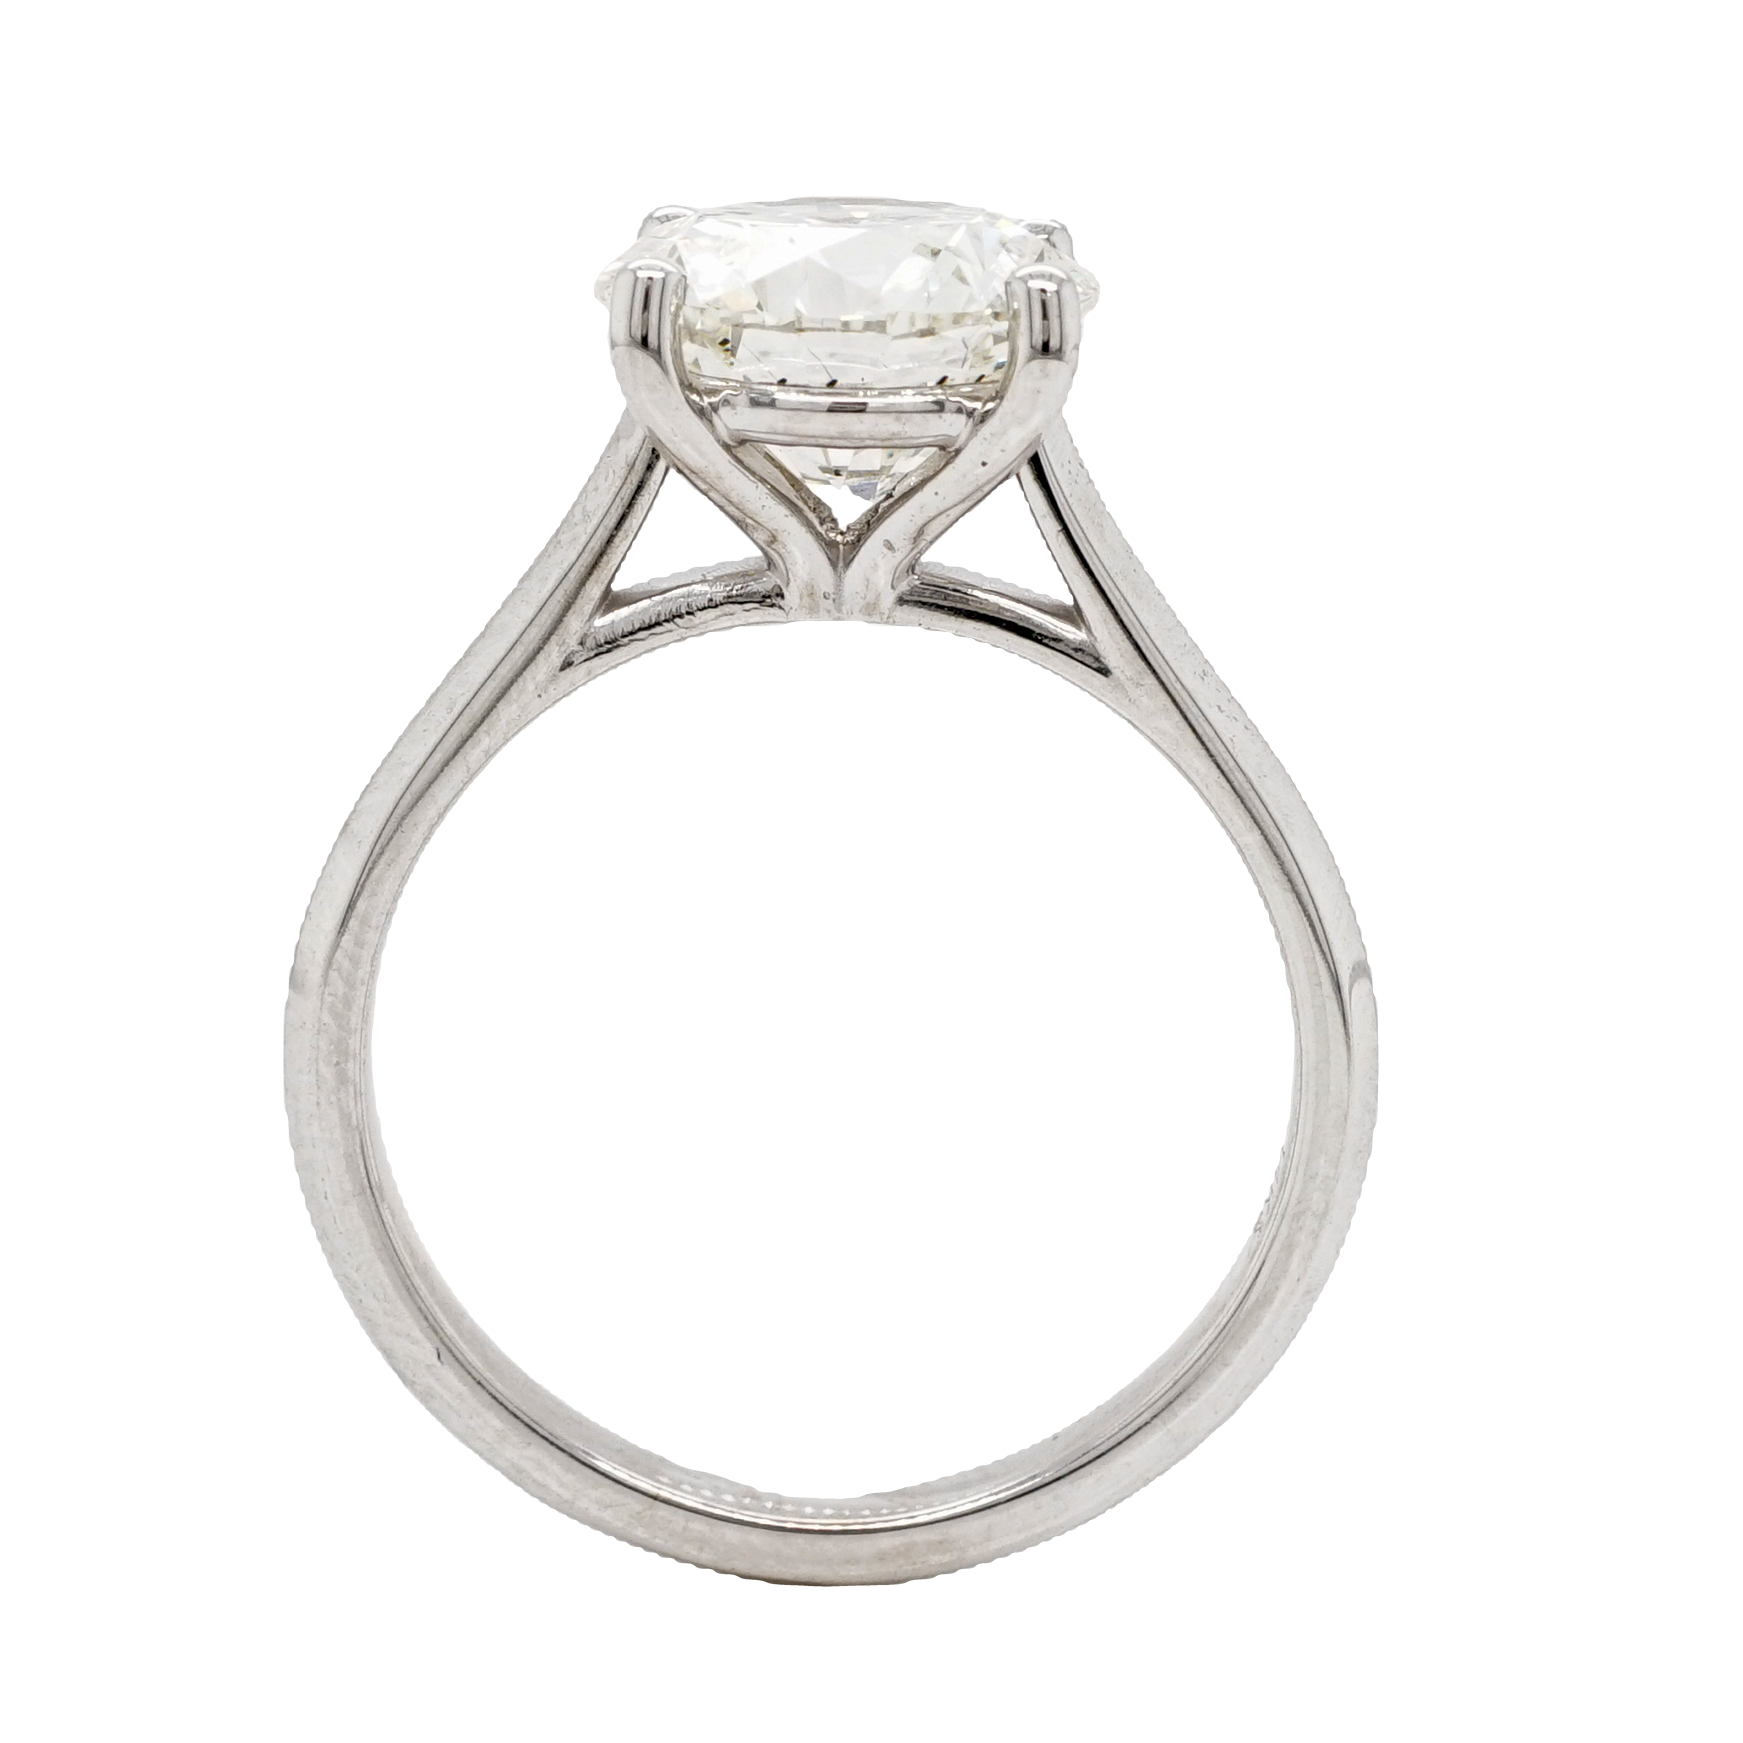 3 Carat GIA Diamond Engagement Ring in 14k White Gold